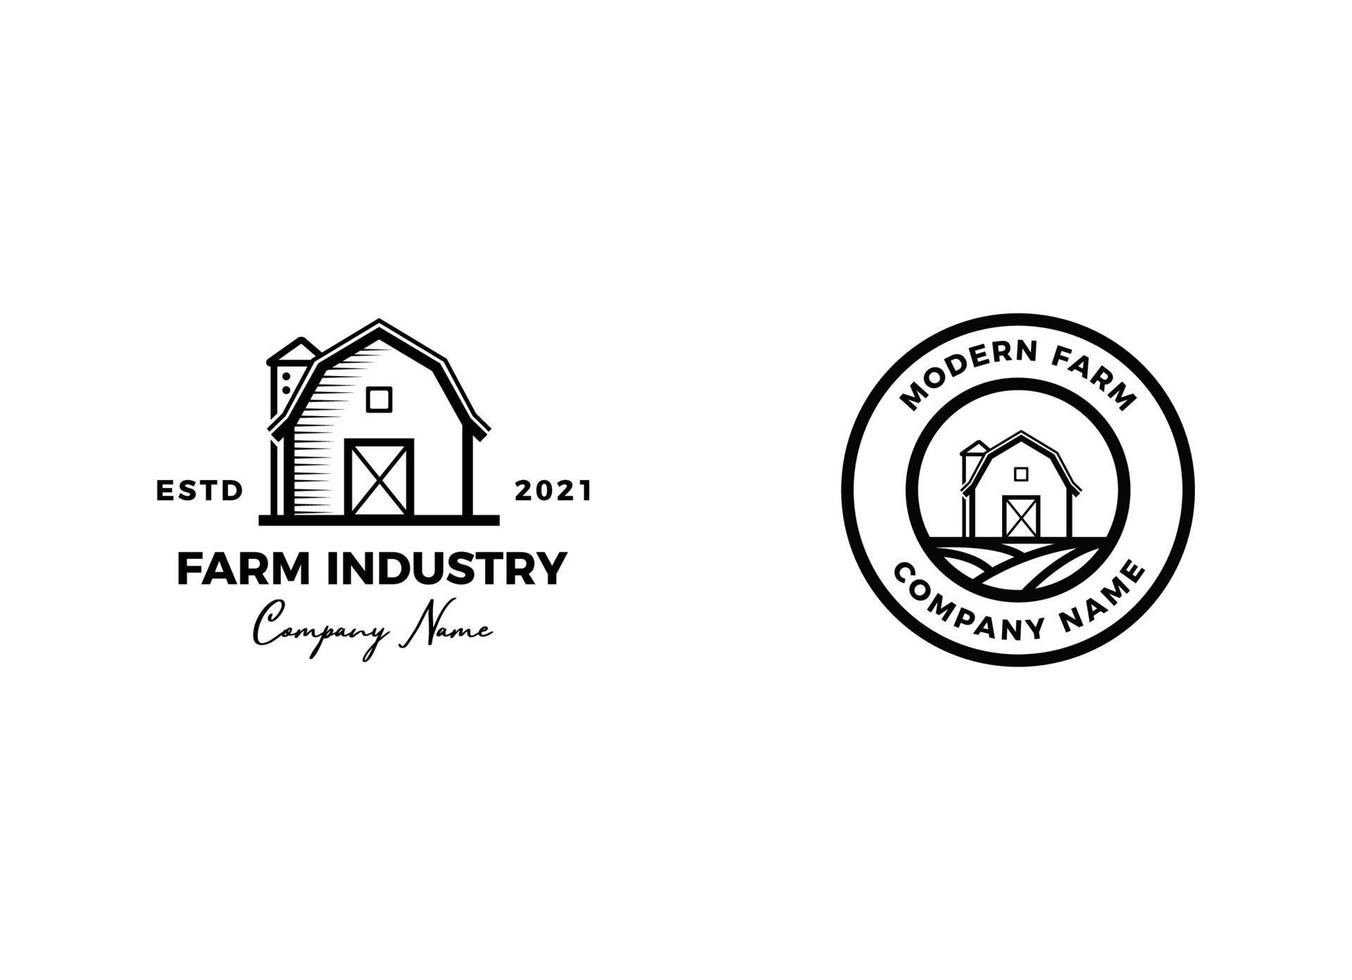 Vintage farm logo design - barn wood building house farm cow cattle vector